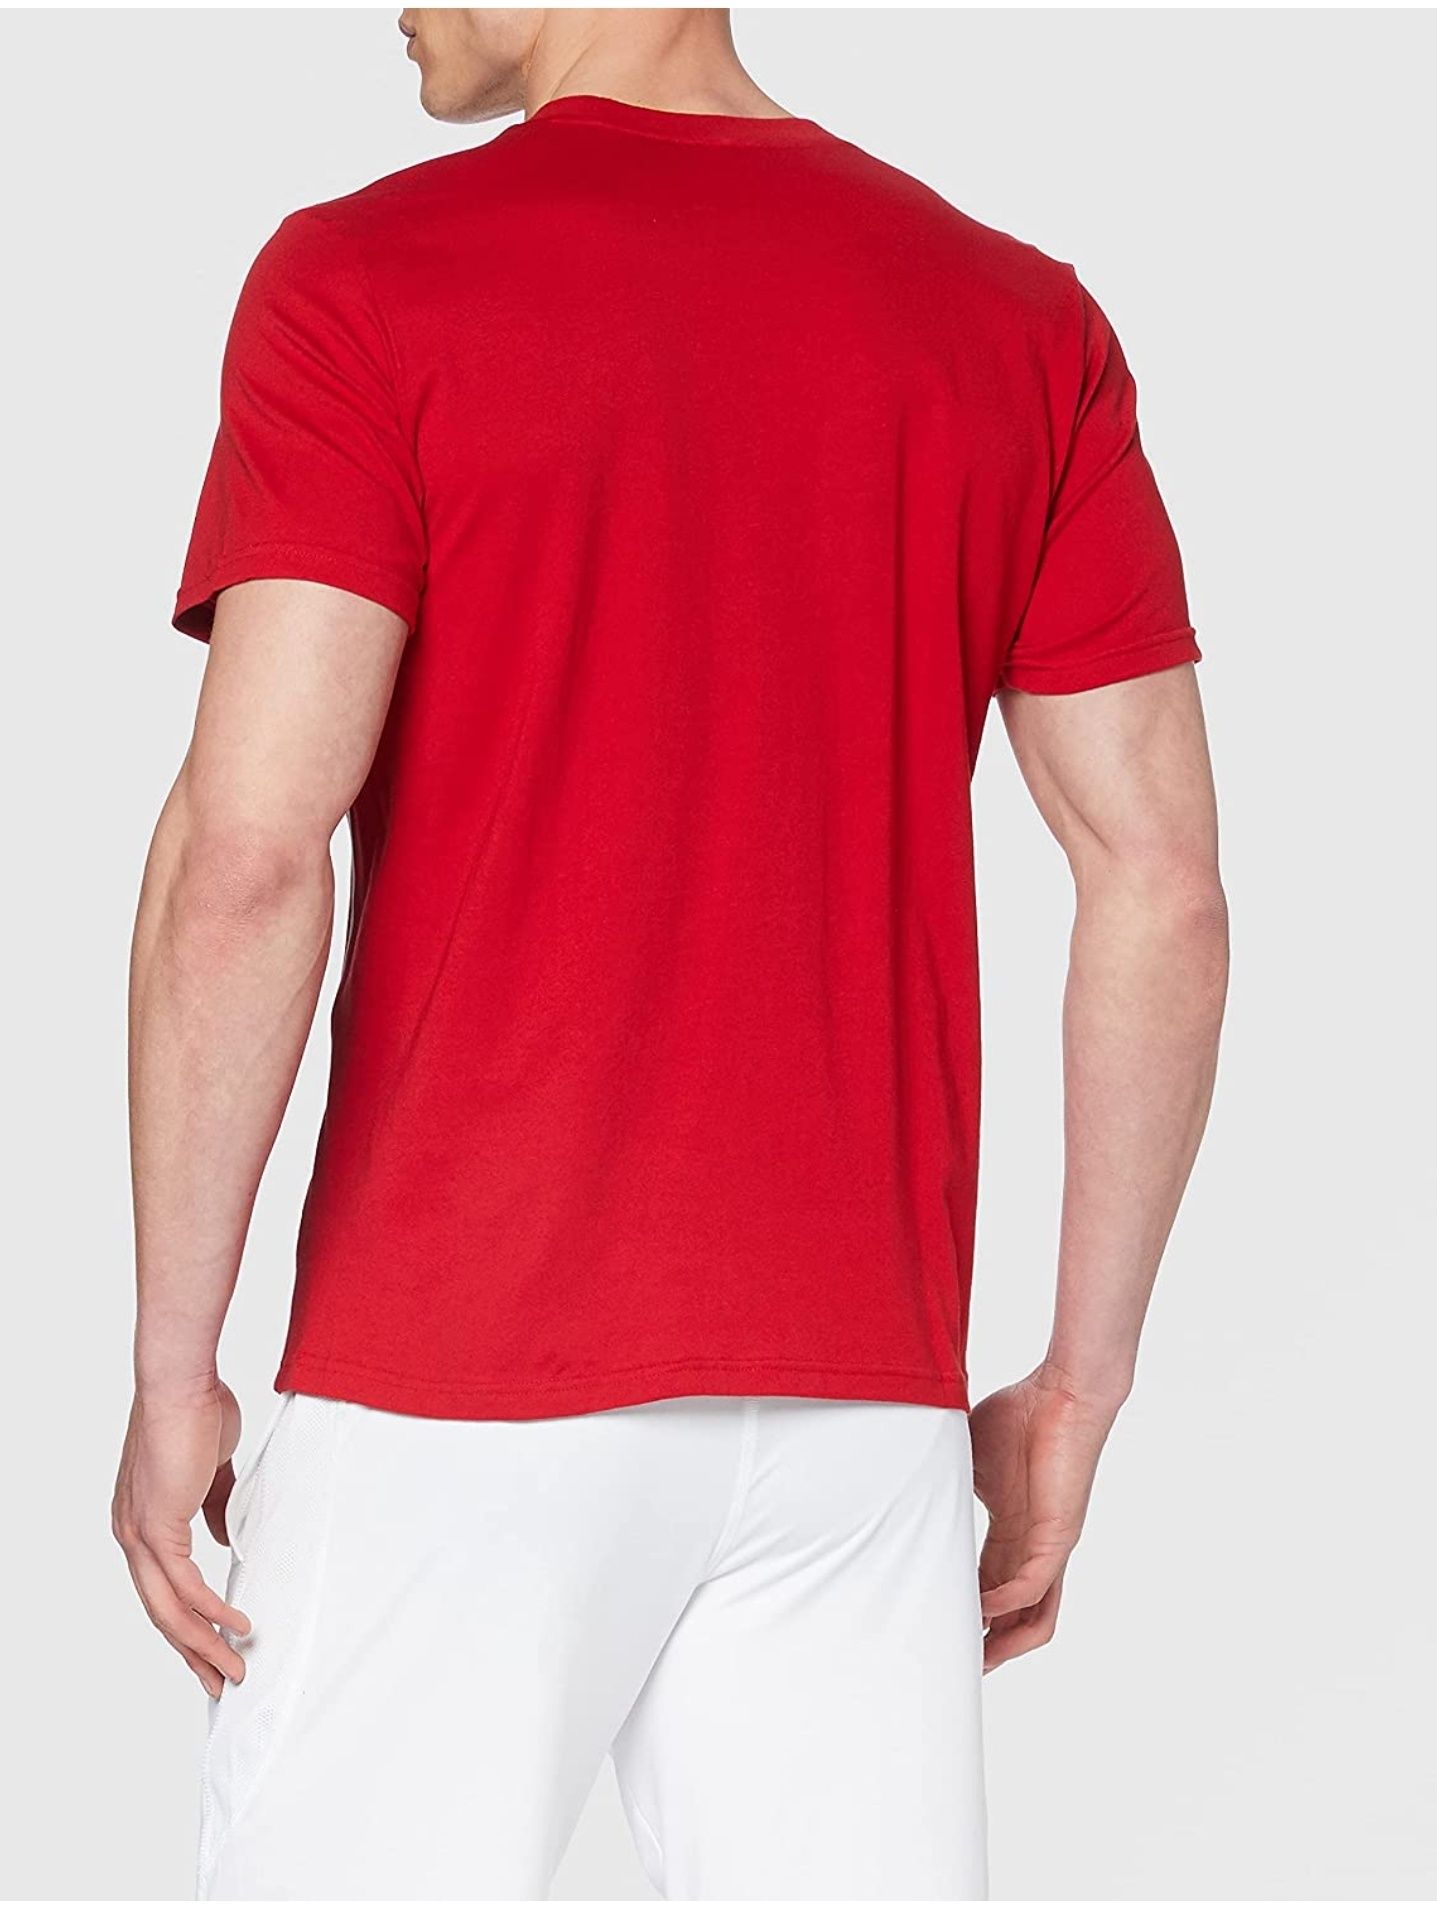 T-Shirt Adidas Core18 Tee (Cv3982)

Vermelha